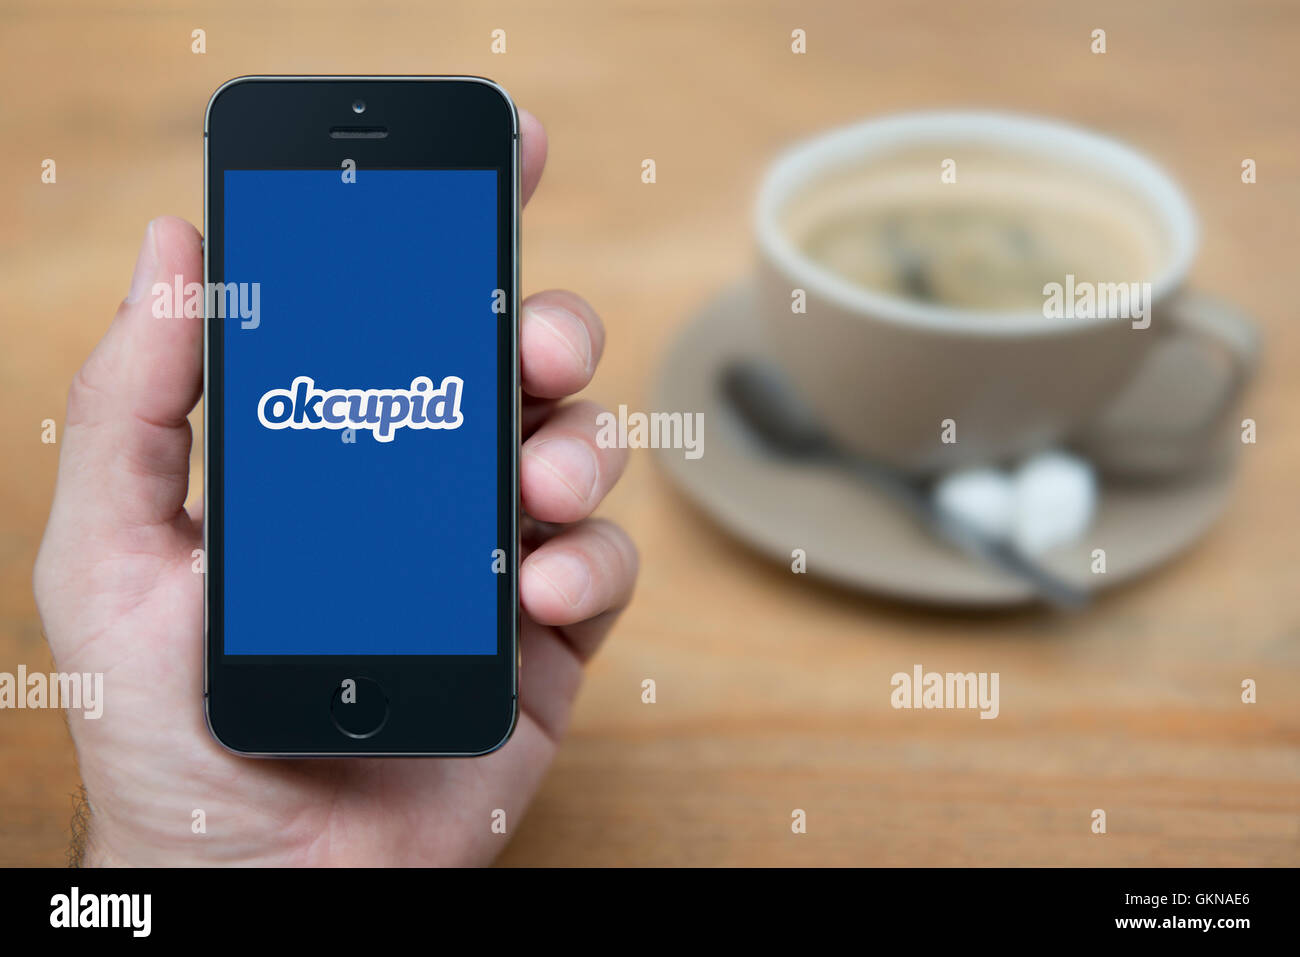 Ein Mann schaut auf seinem iPhone das OK Cupid-Logo anzeigt, während bei einer Tasse Kaffee (nur zur redaktionellen Verwendung) saß. Stockfoto